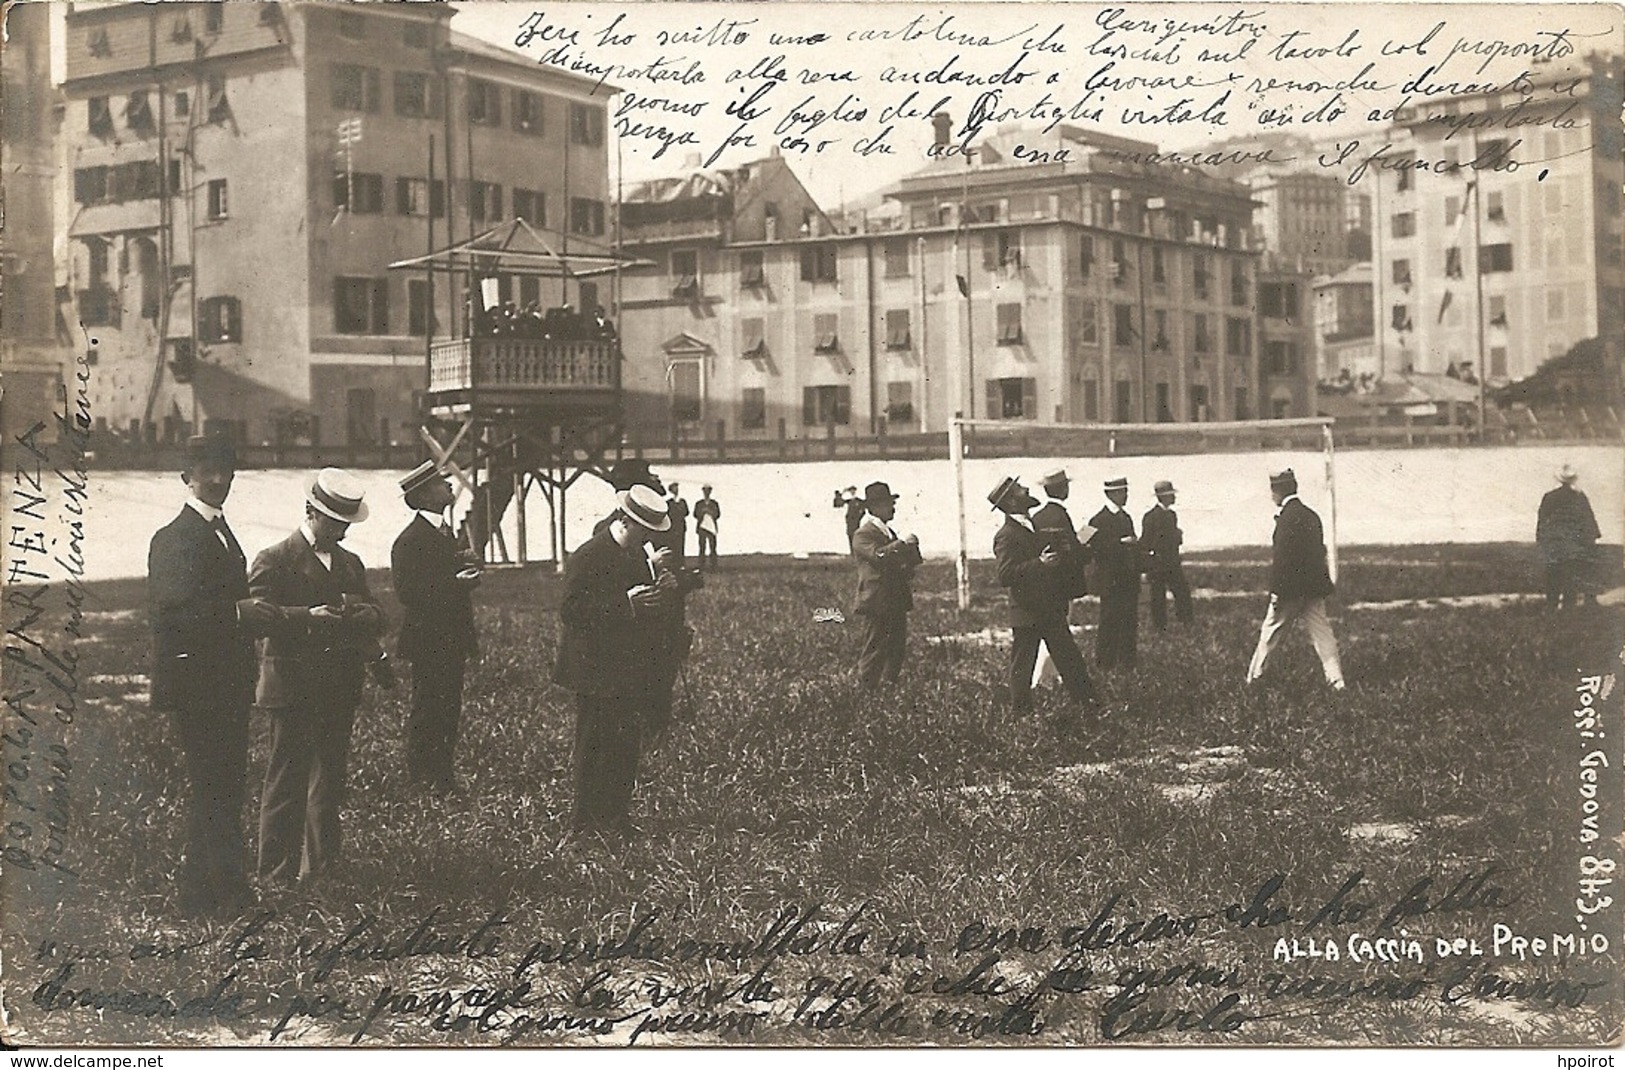 GENOVA - CONCORSO ALLA MIGLIORE ISTANTANEA - FORMATO PICCOLO - VIAGGIATA 1903 - (rif. R78) - Fotografia